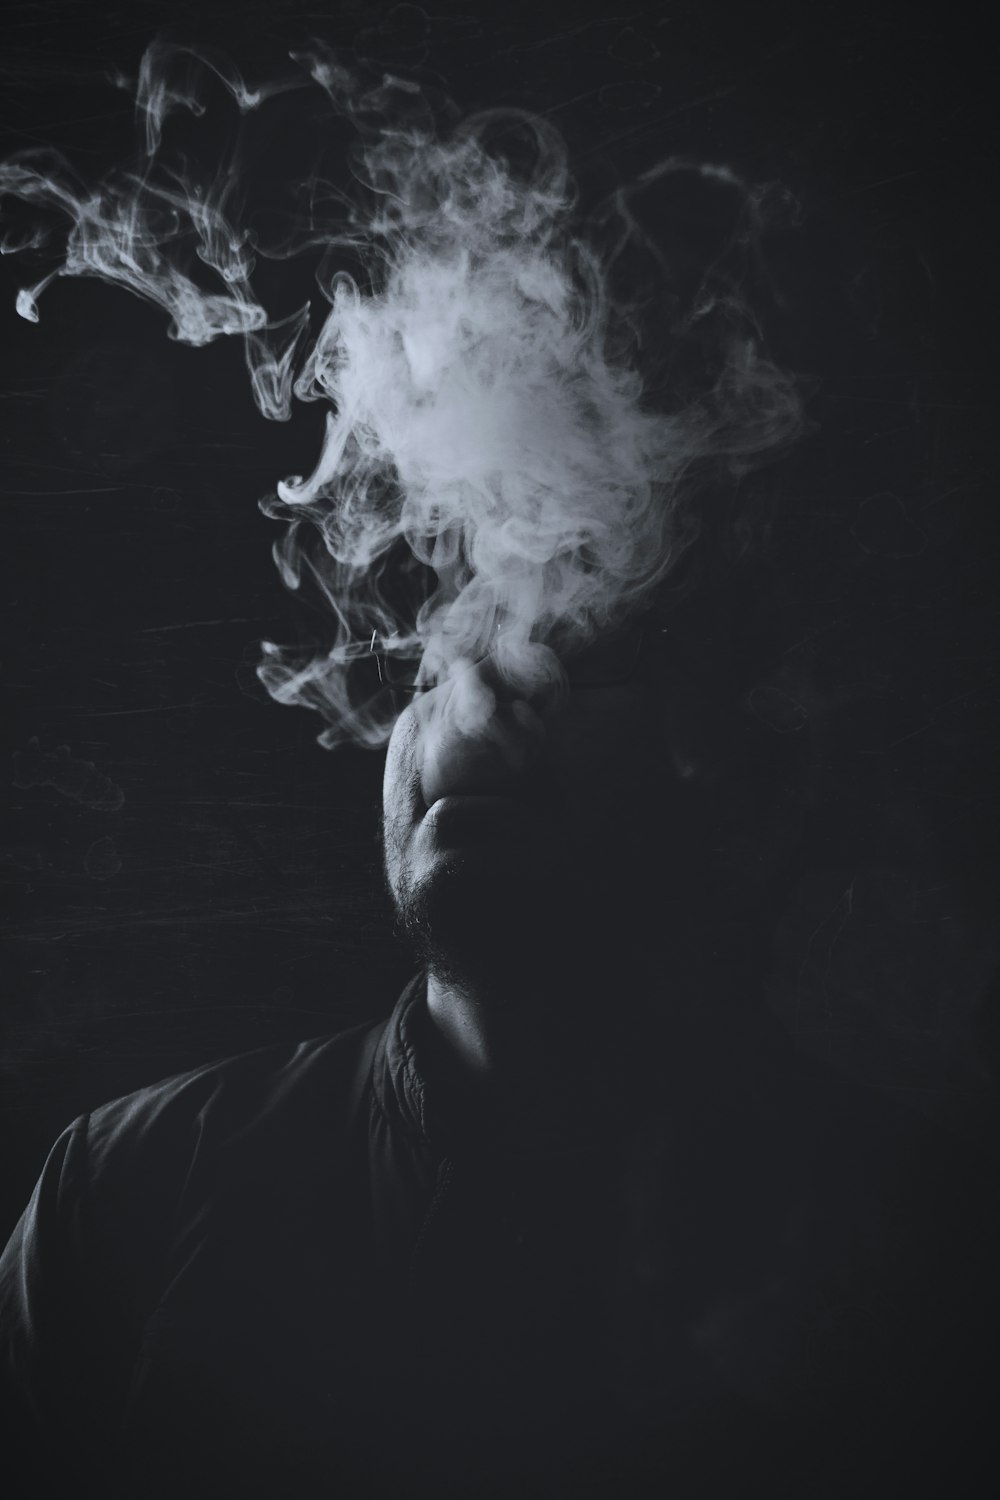 Fotografia in scala di grigi dell'uomo con fumo